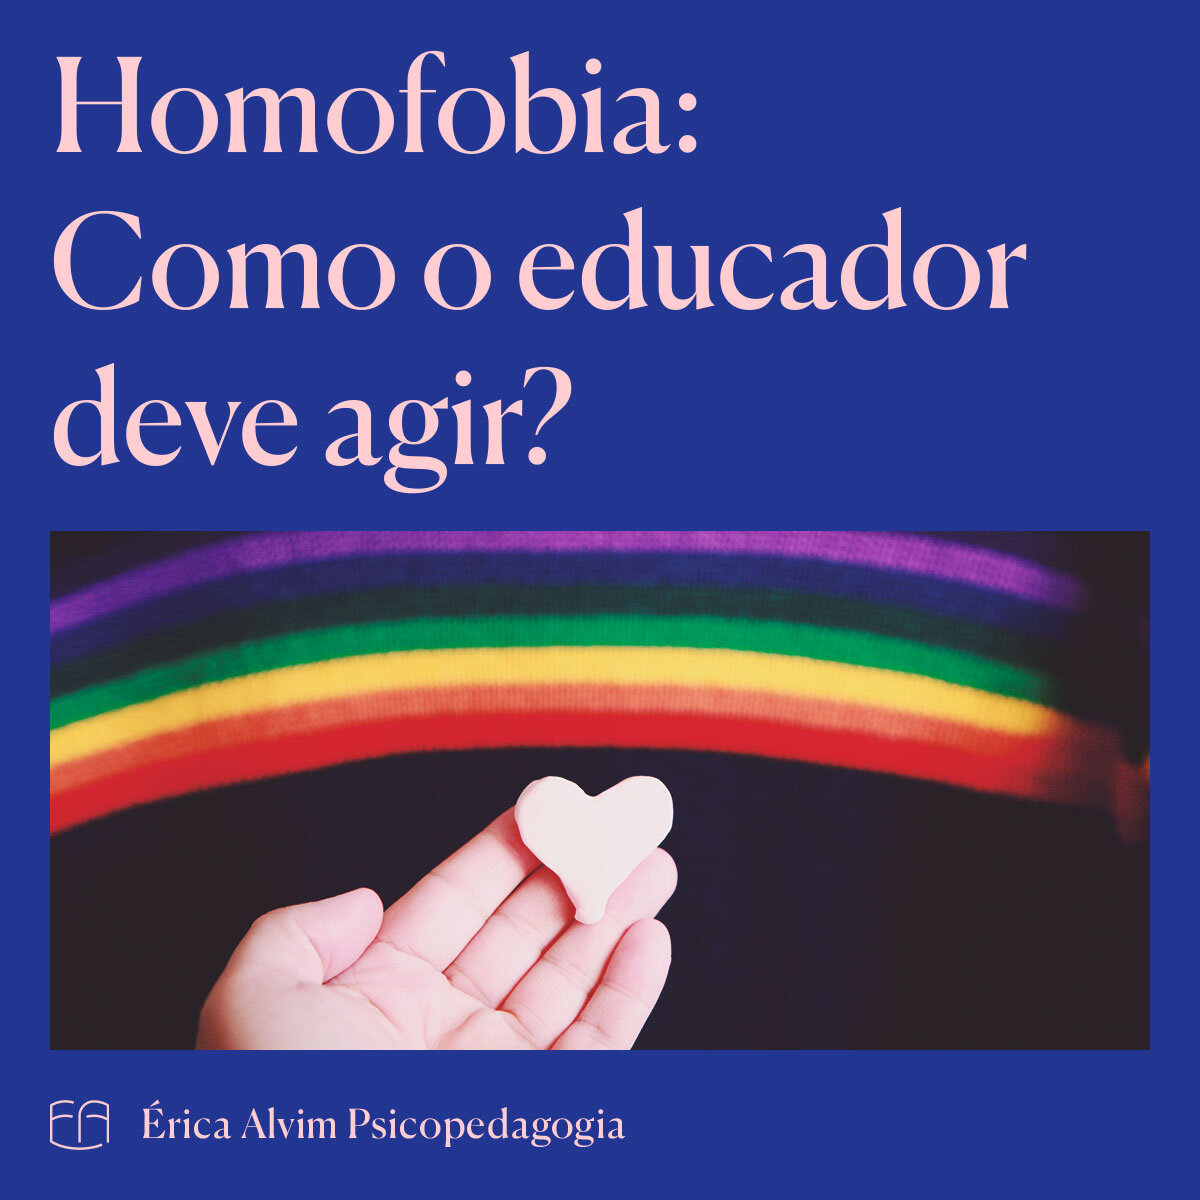 01-homofobia-como-educador-deve-agir.jpg